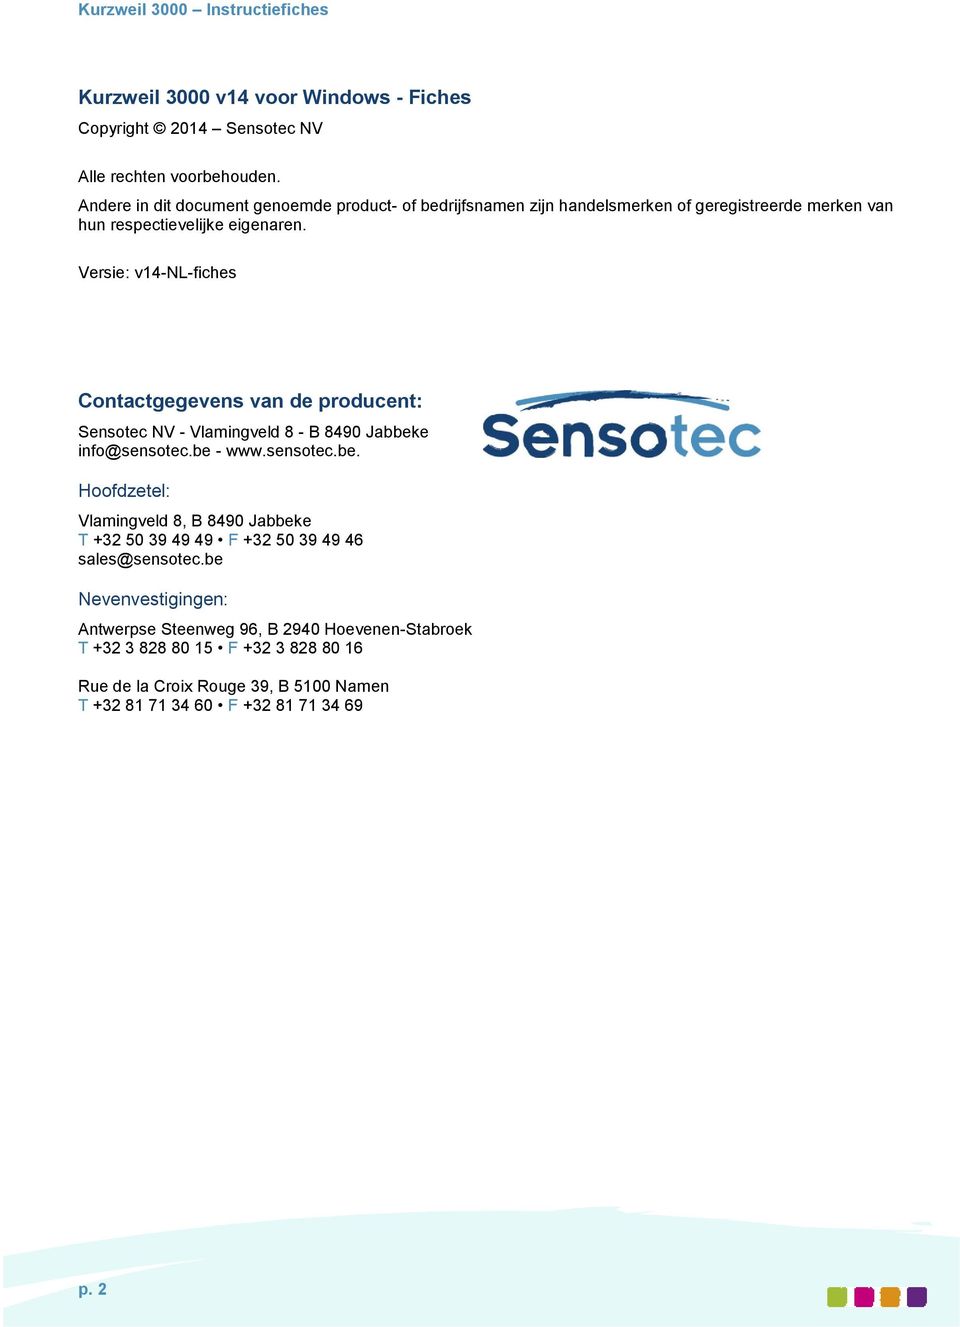 Versie: v14-nl-fiches Contactgegevens van de producent: Sensotec NV - Vlamingveld 8 - B 8490 Jabbek